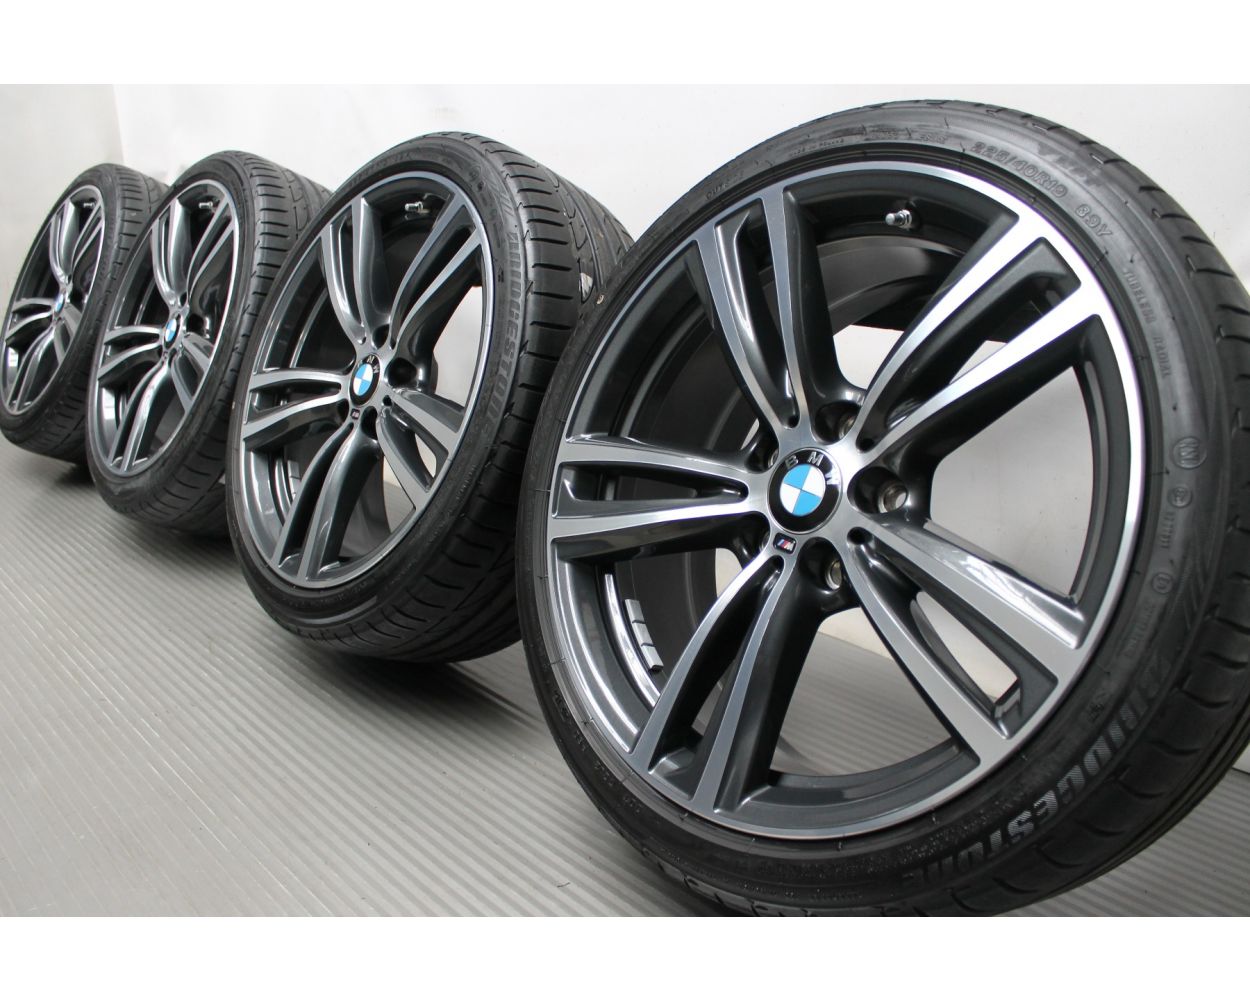 BMW Summer Wheels 3er F30 F31 / 4er F32 F33 F36 19 Zoll 442M 